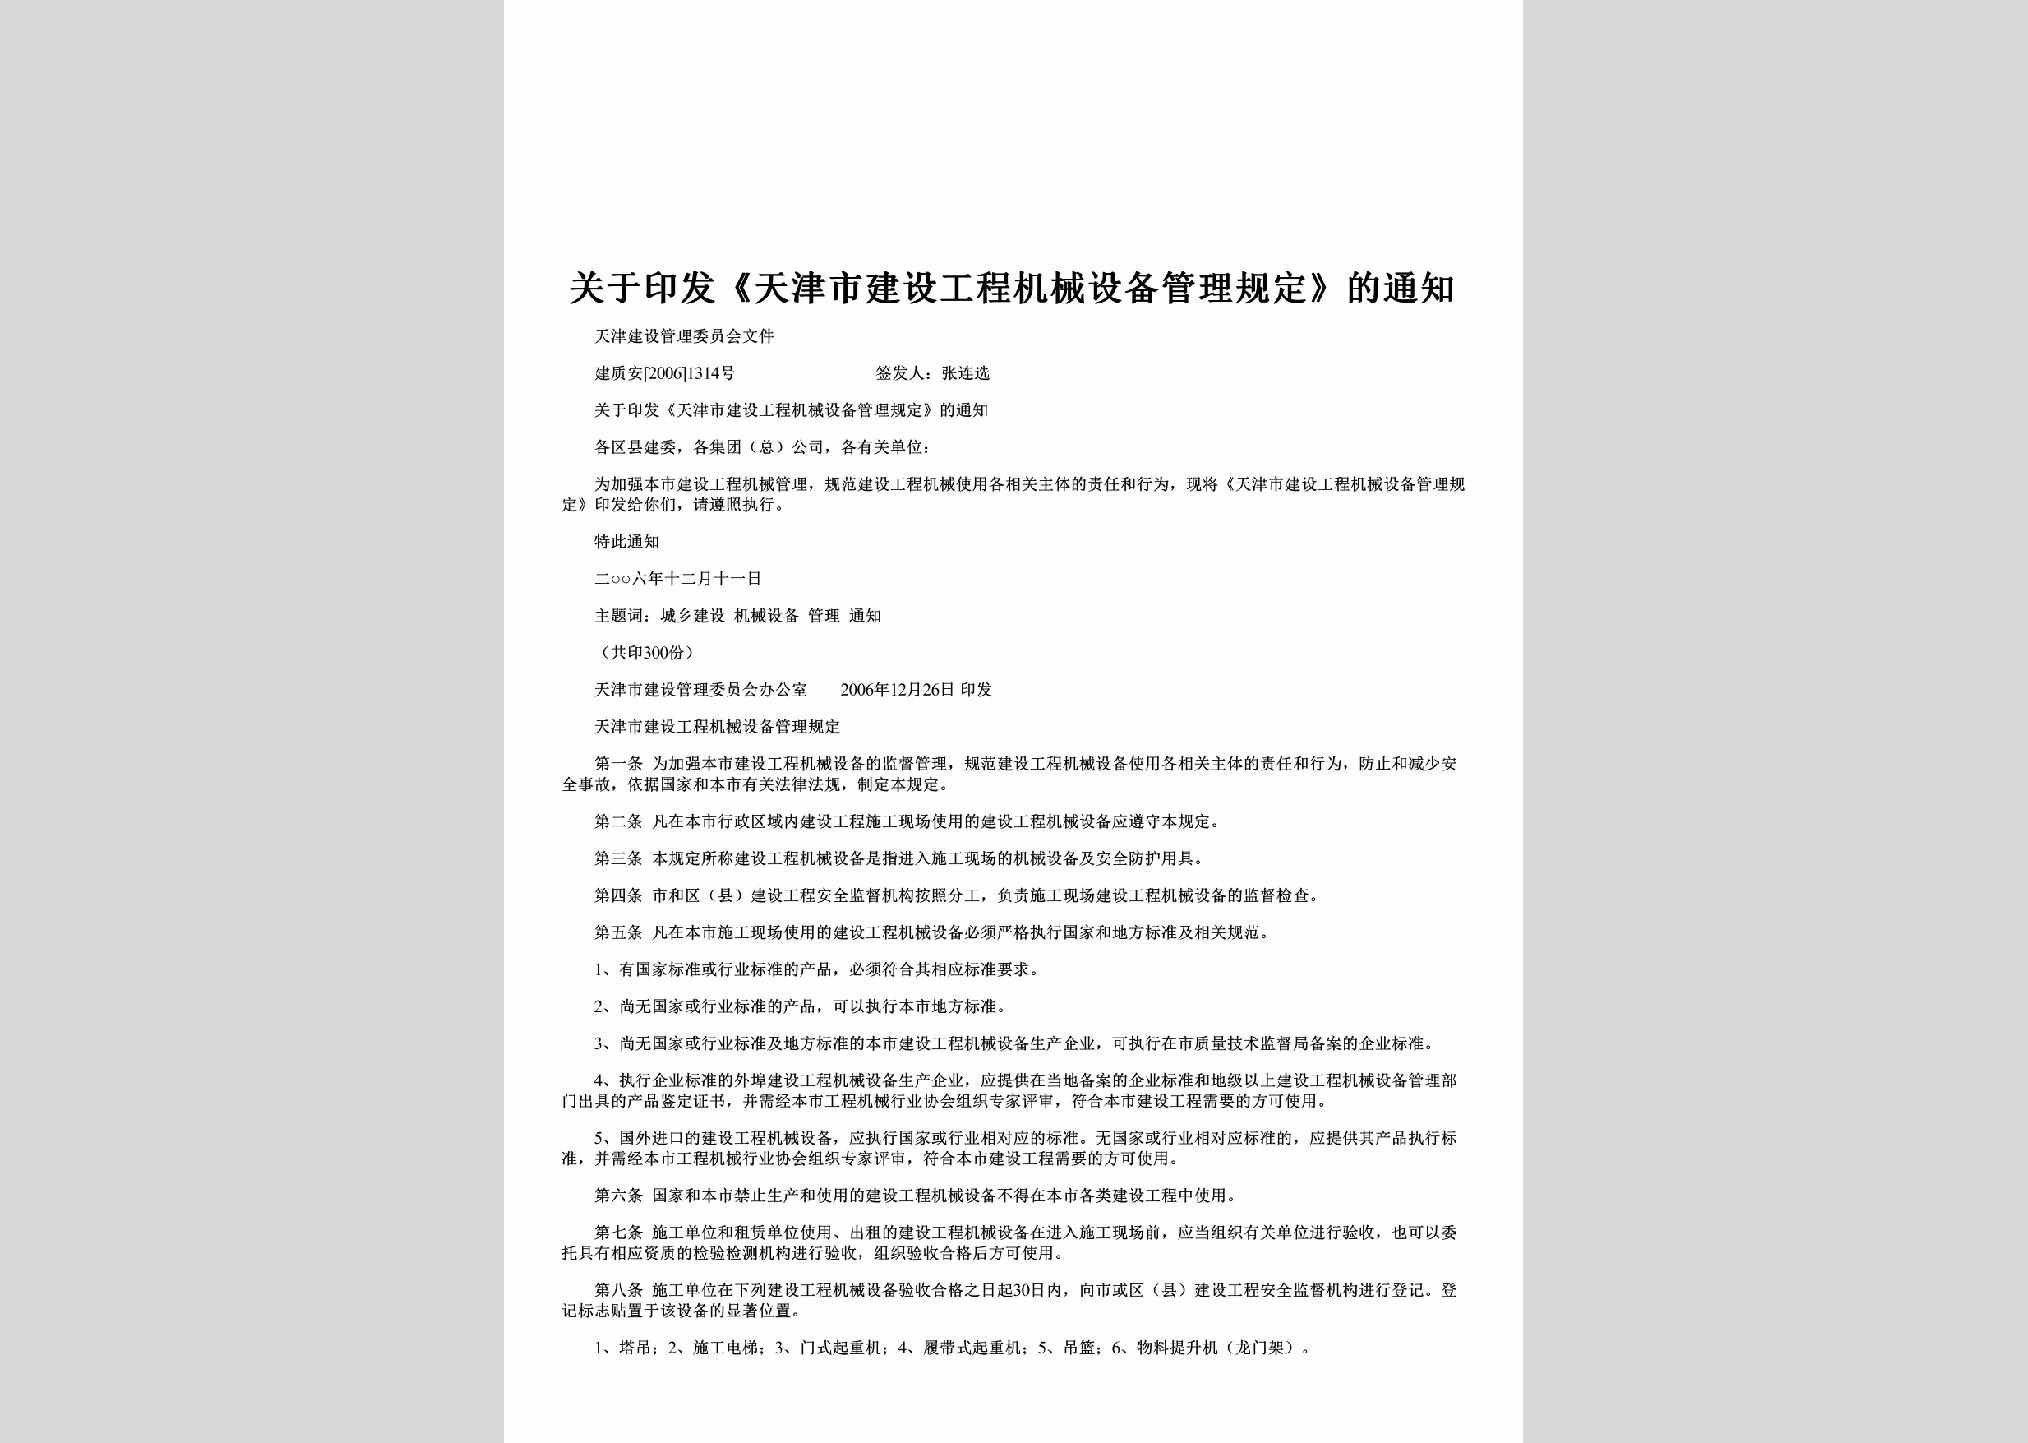 建质安[2006]1314号：关于印发《天津市建设工程机械设备管理规定》的通知